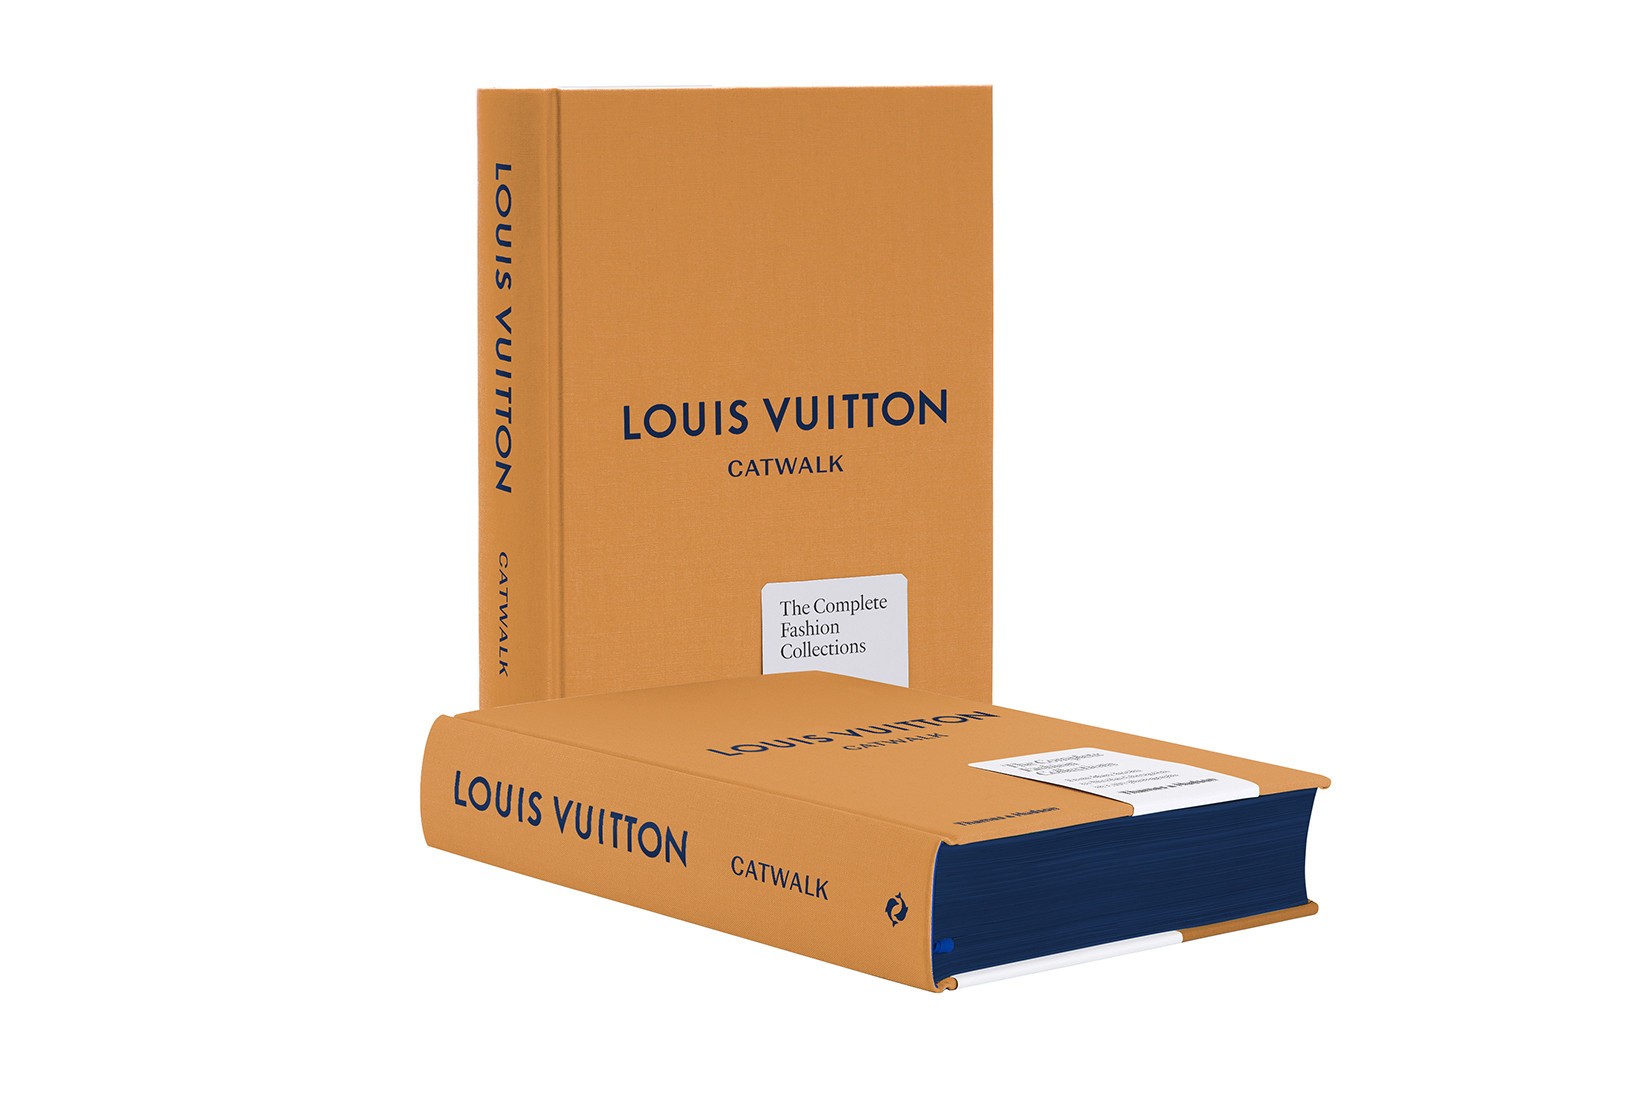 Louis Vuitton издали альбом со всеми показами за 20 лет